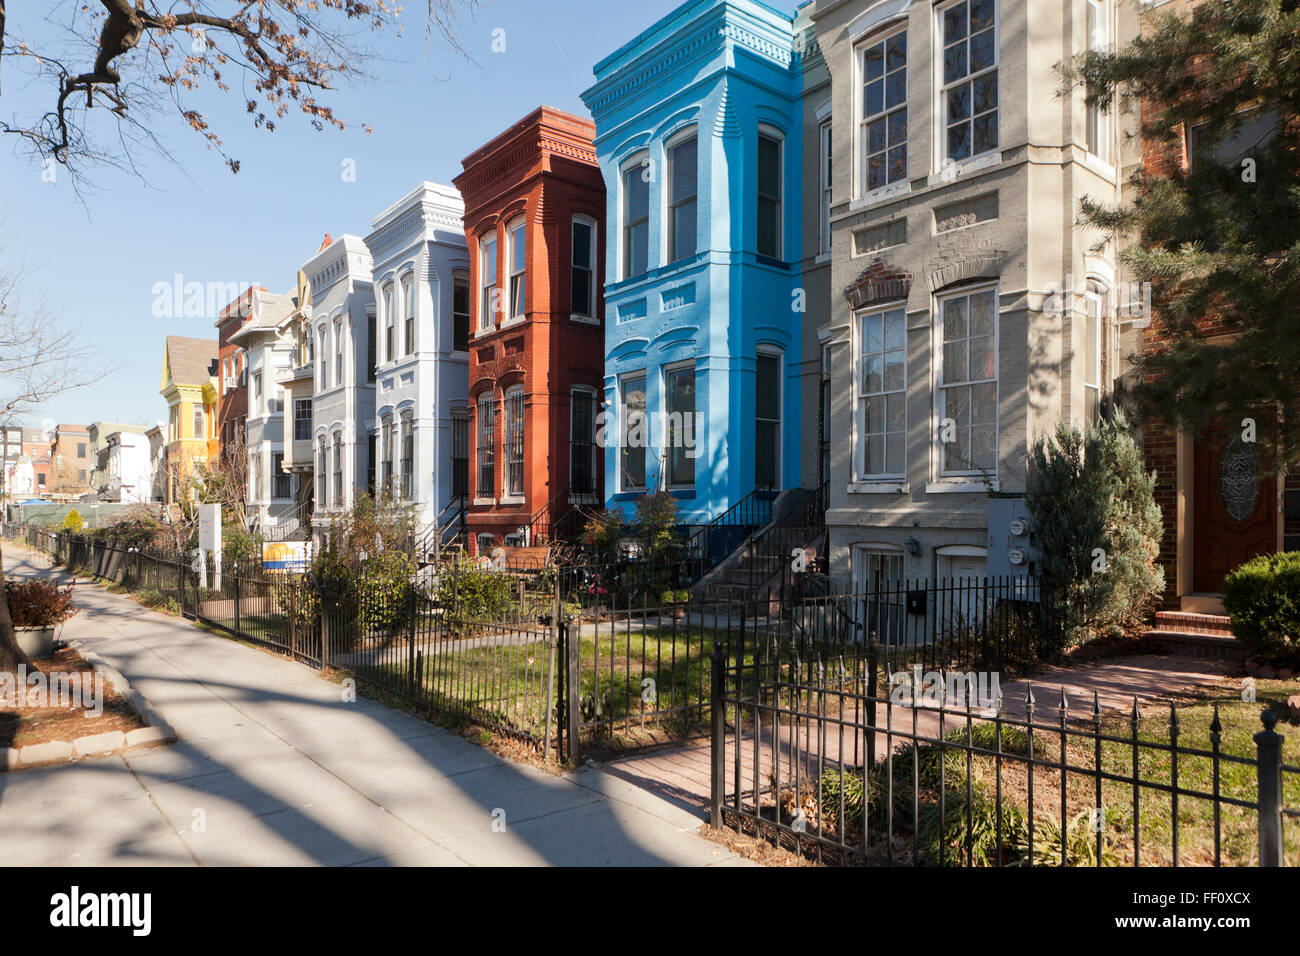 Colorful row houses - Washington, DC USA Stock Photo